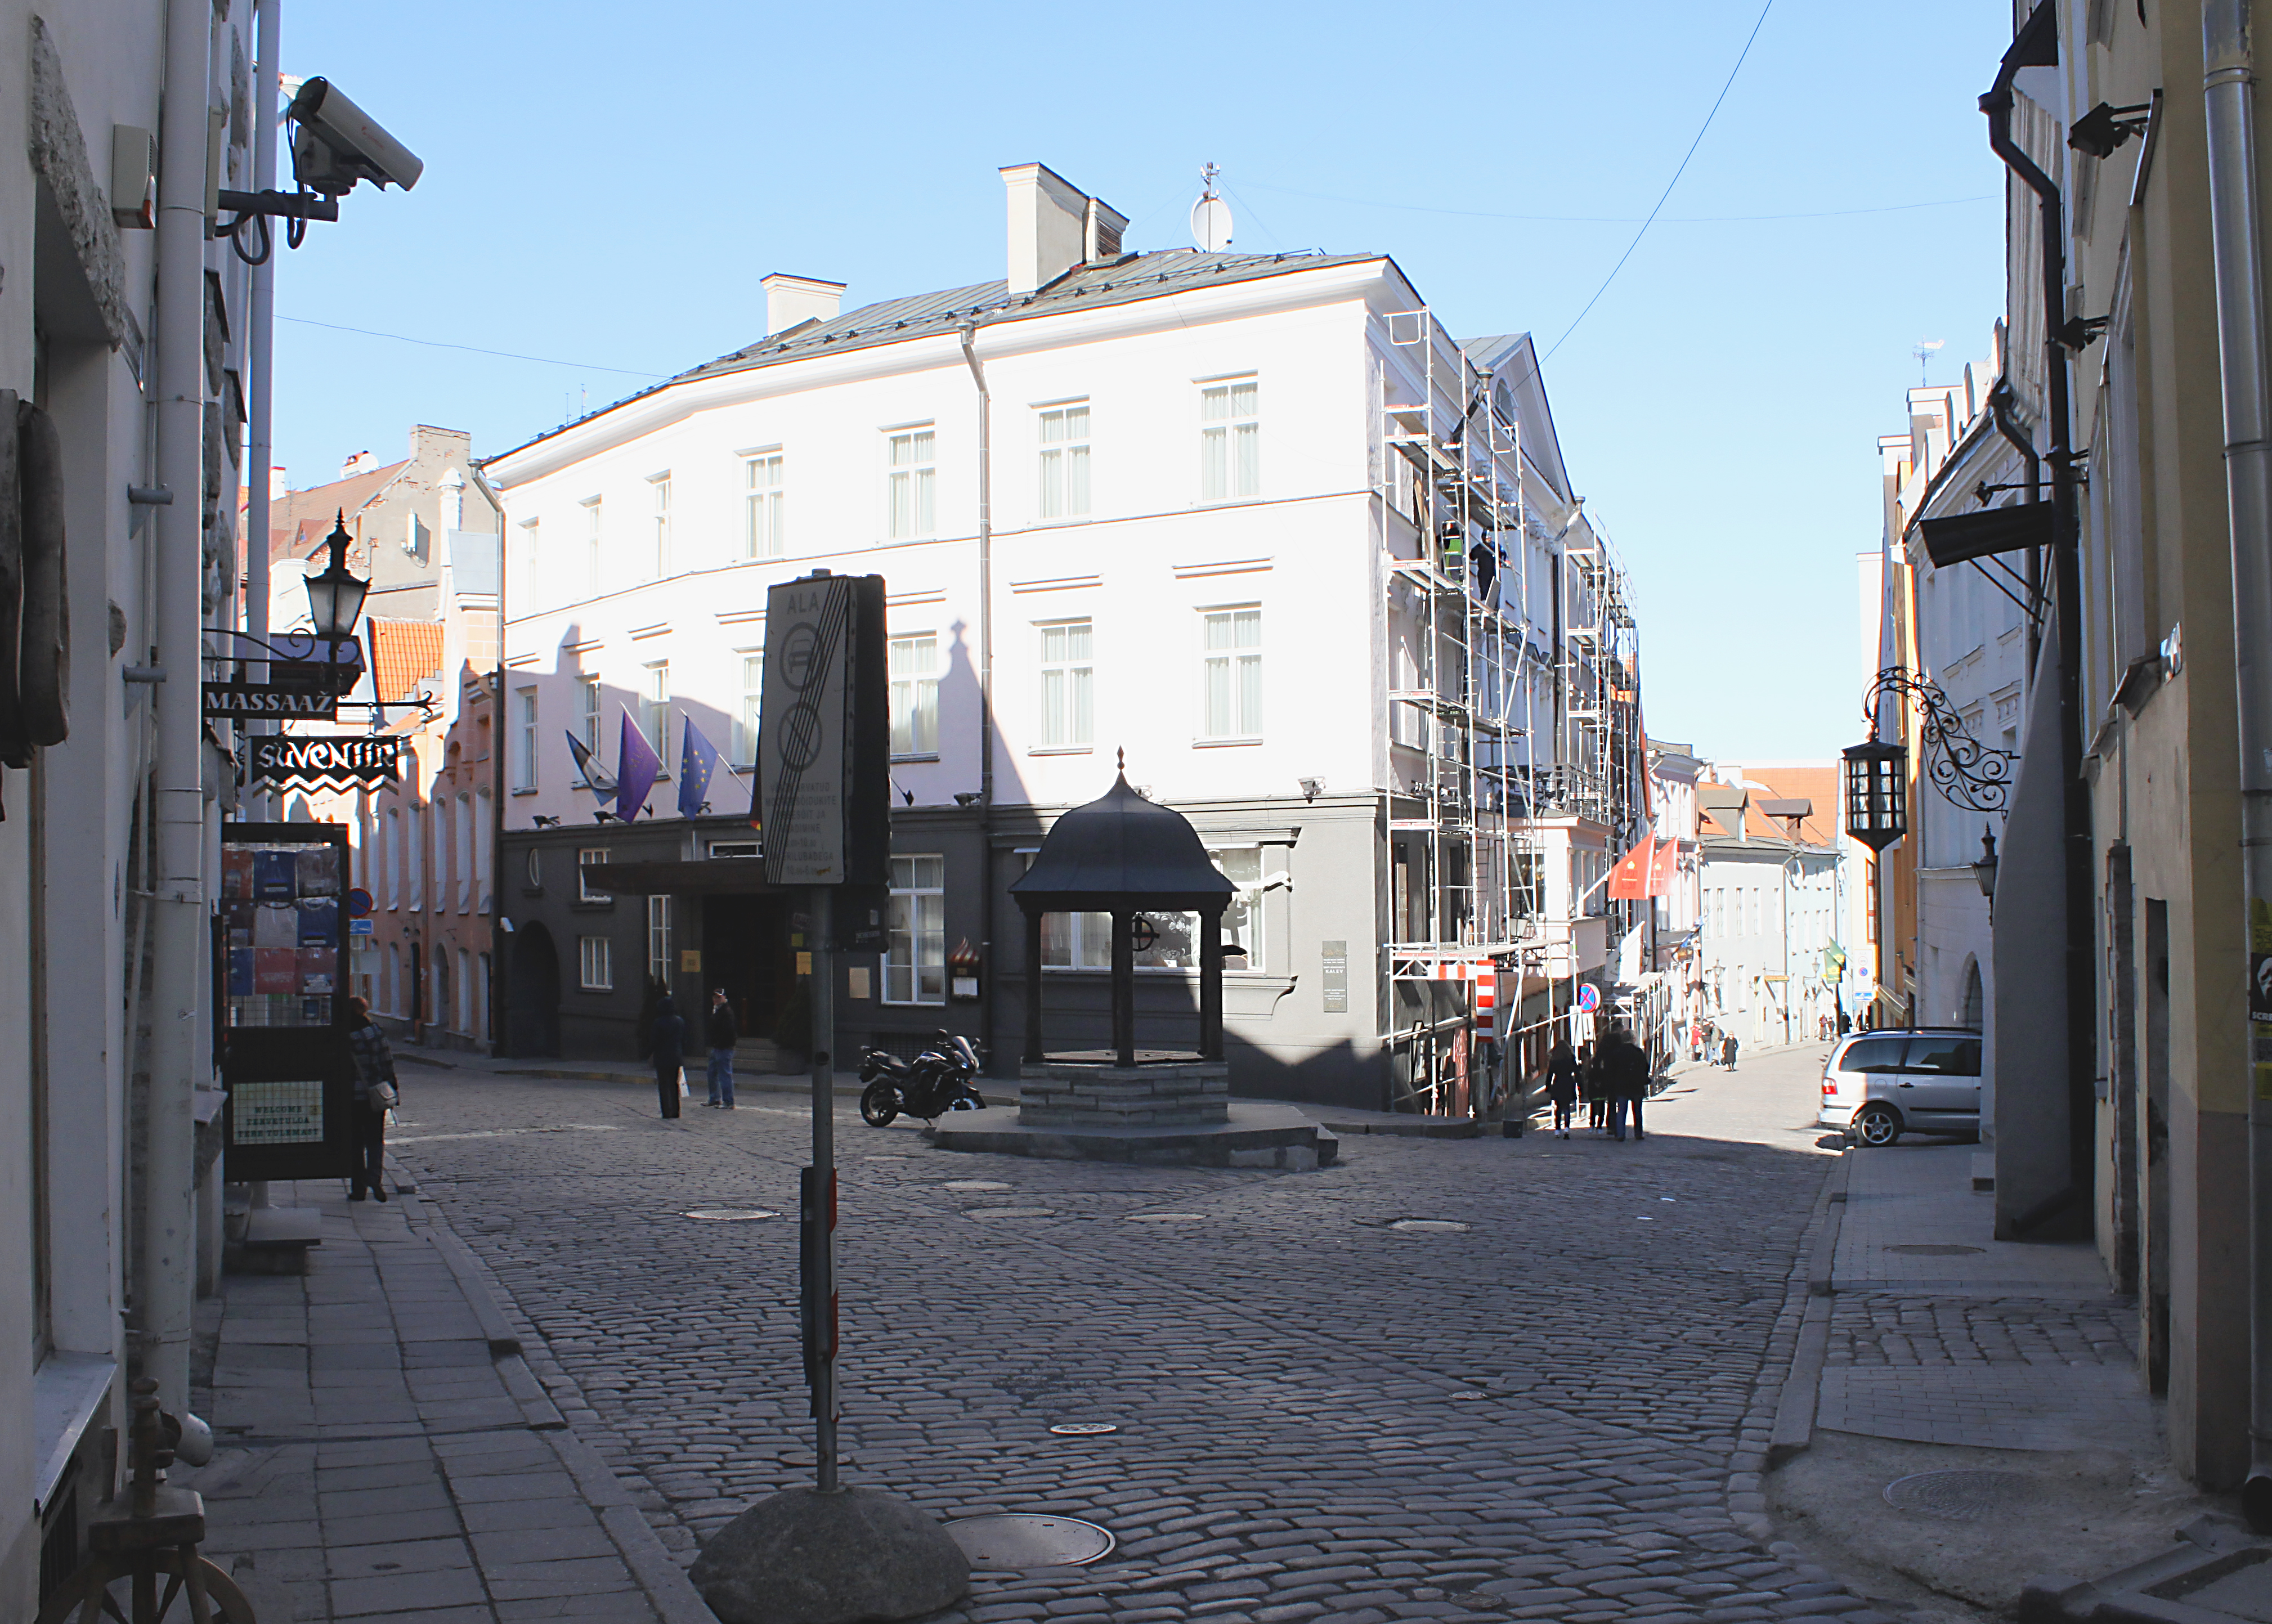 Rataskaevu ja Dunkri tänava nurk, "Hotell Peterburg" rephoto